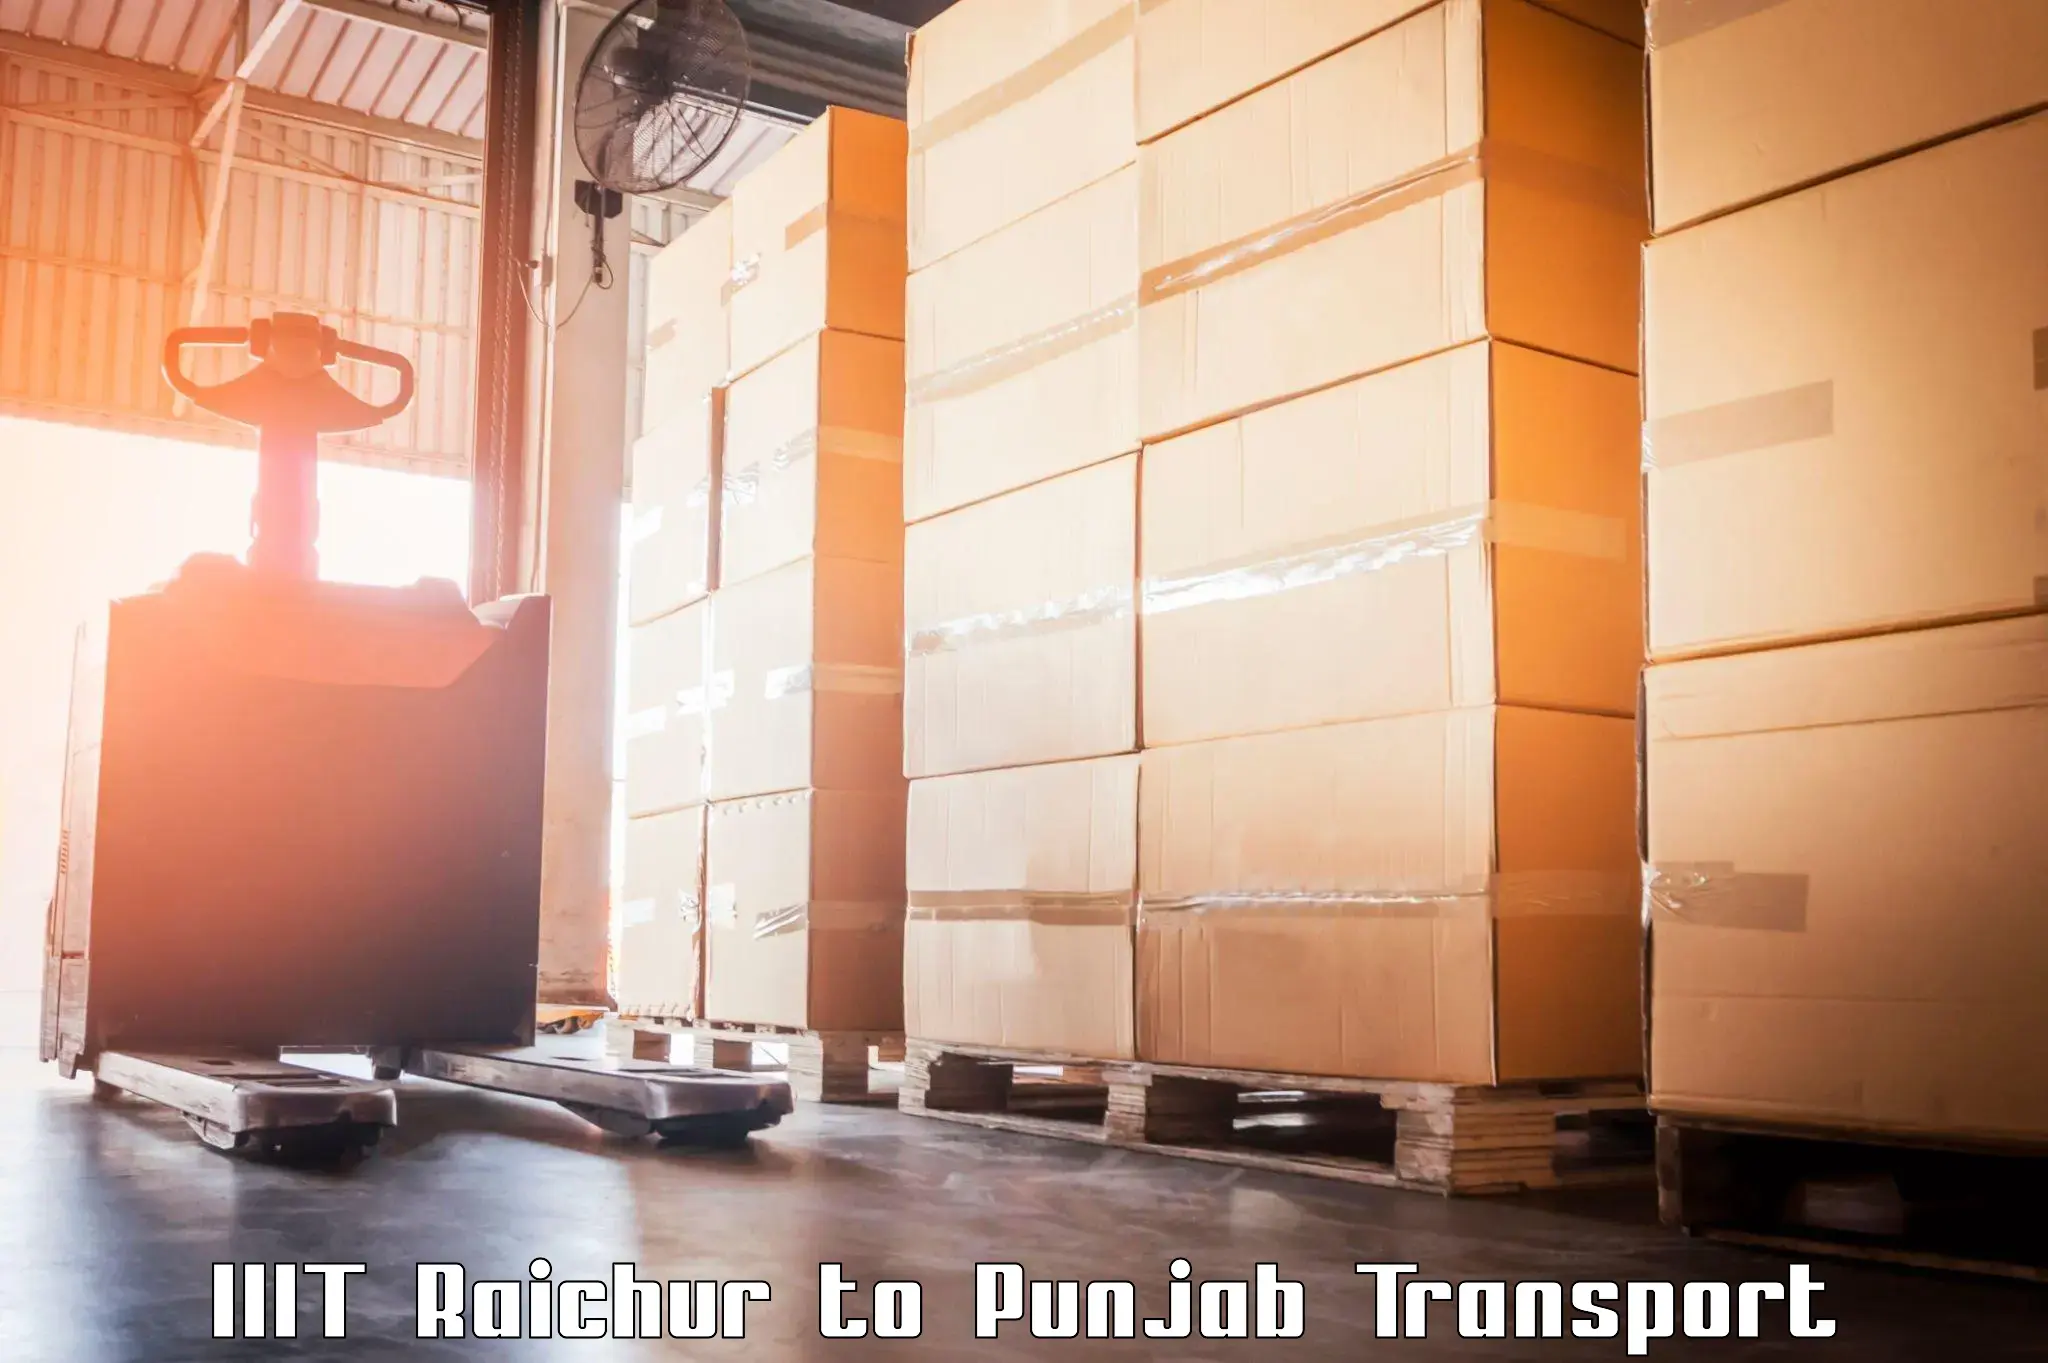 Cargo transport services IIIT Raichur to Amritsar